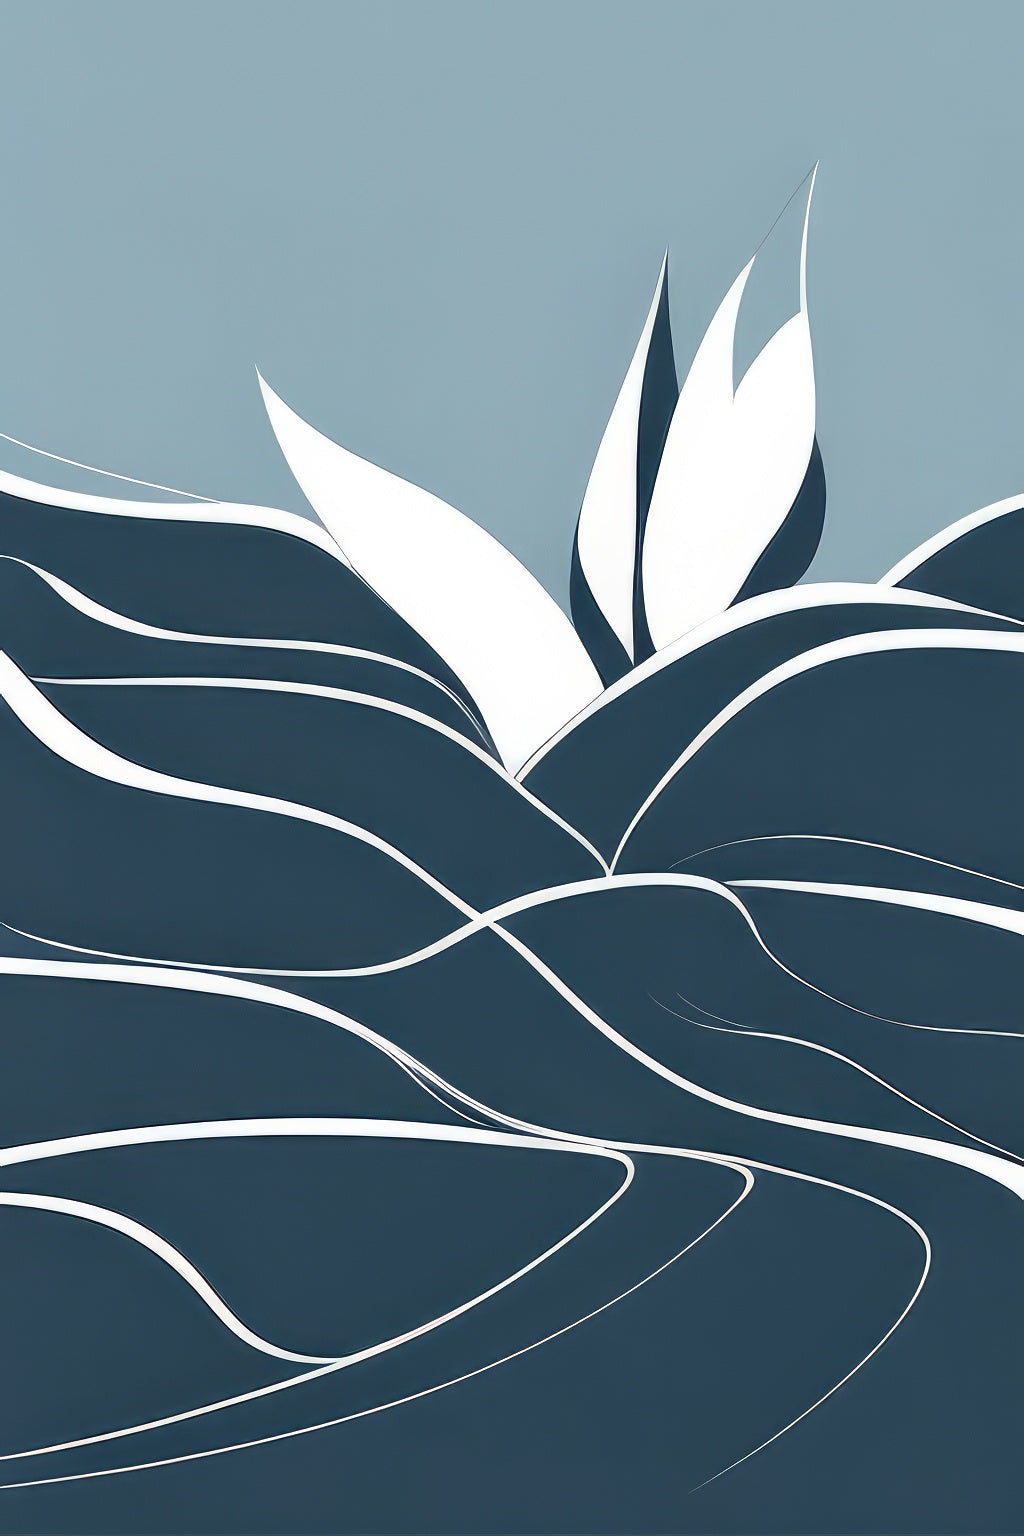 Abstract Lotus Among The Waves Illustration Art Print